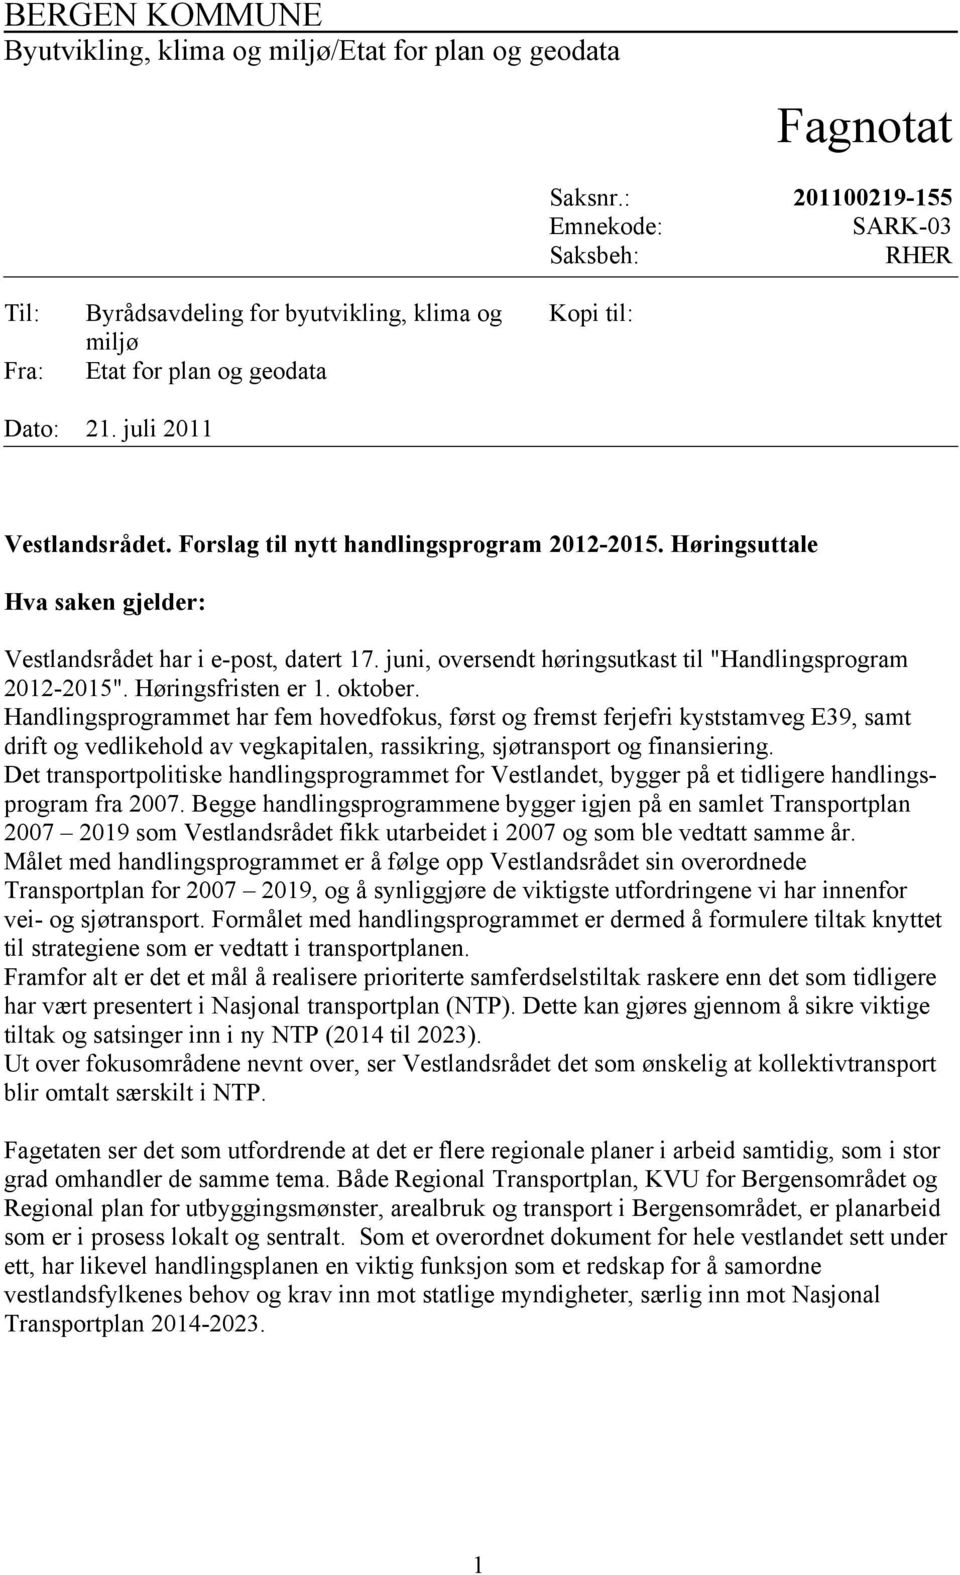 Høringsuttale Hva saken gjelder: Vestlandsrådet har i e-post, datert 17. juni, oversendt høringsutkast til "Handlingsprogram 2012-2015". Høringsfristen er 1. oktober.